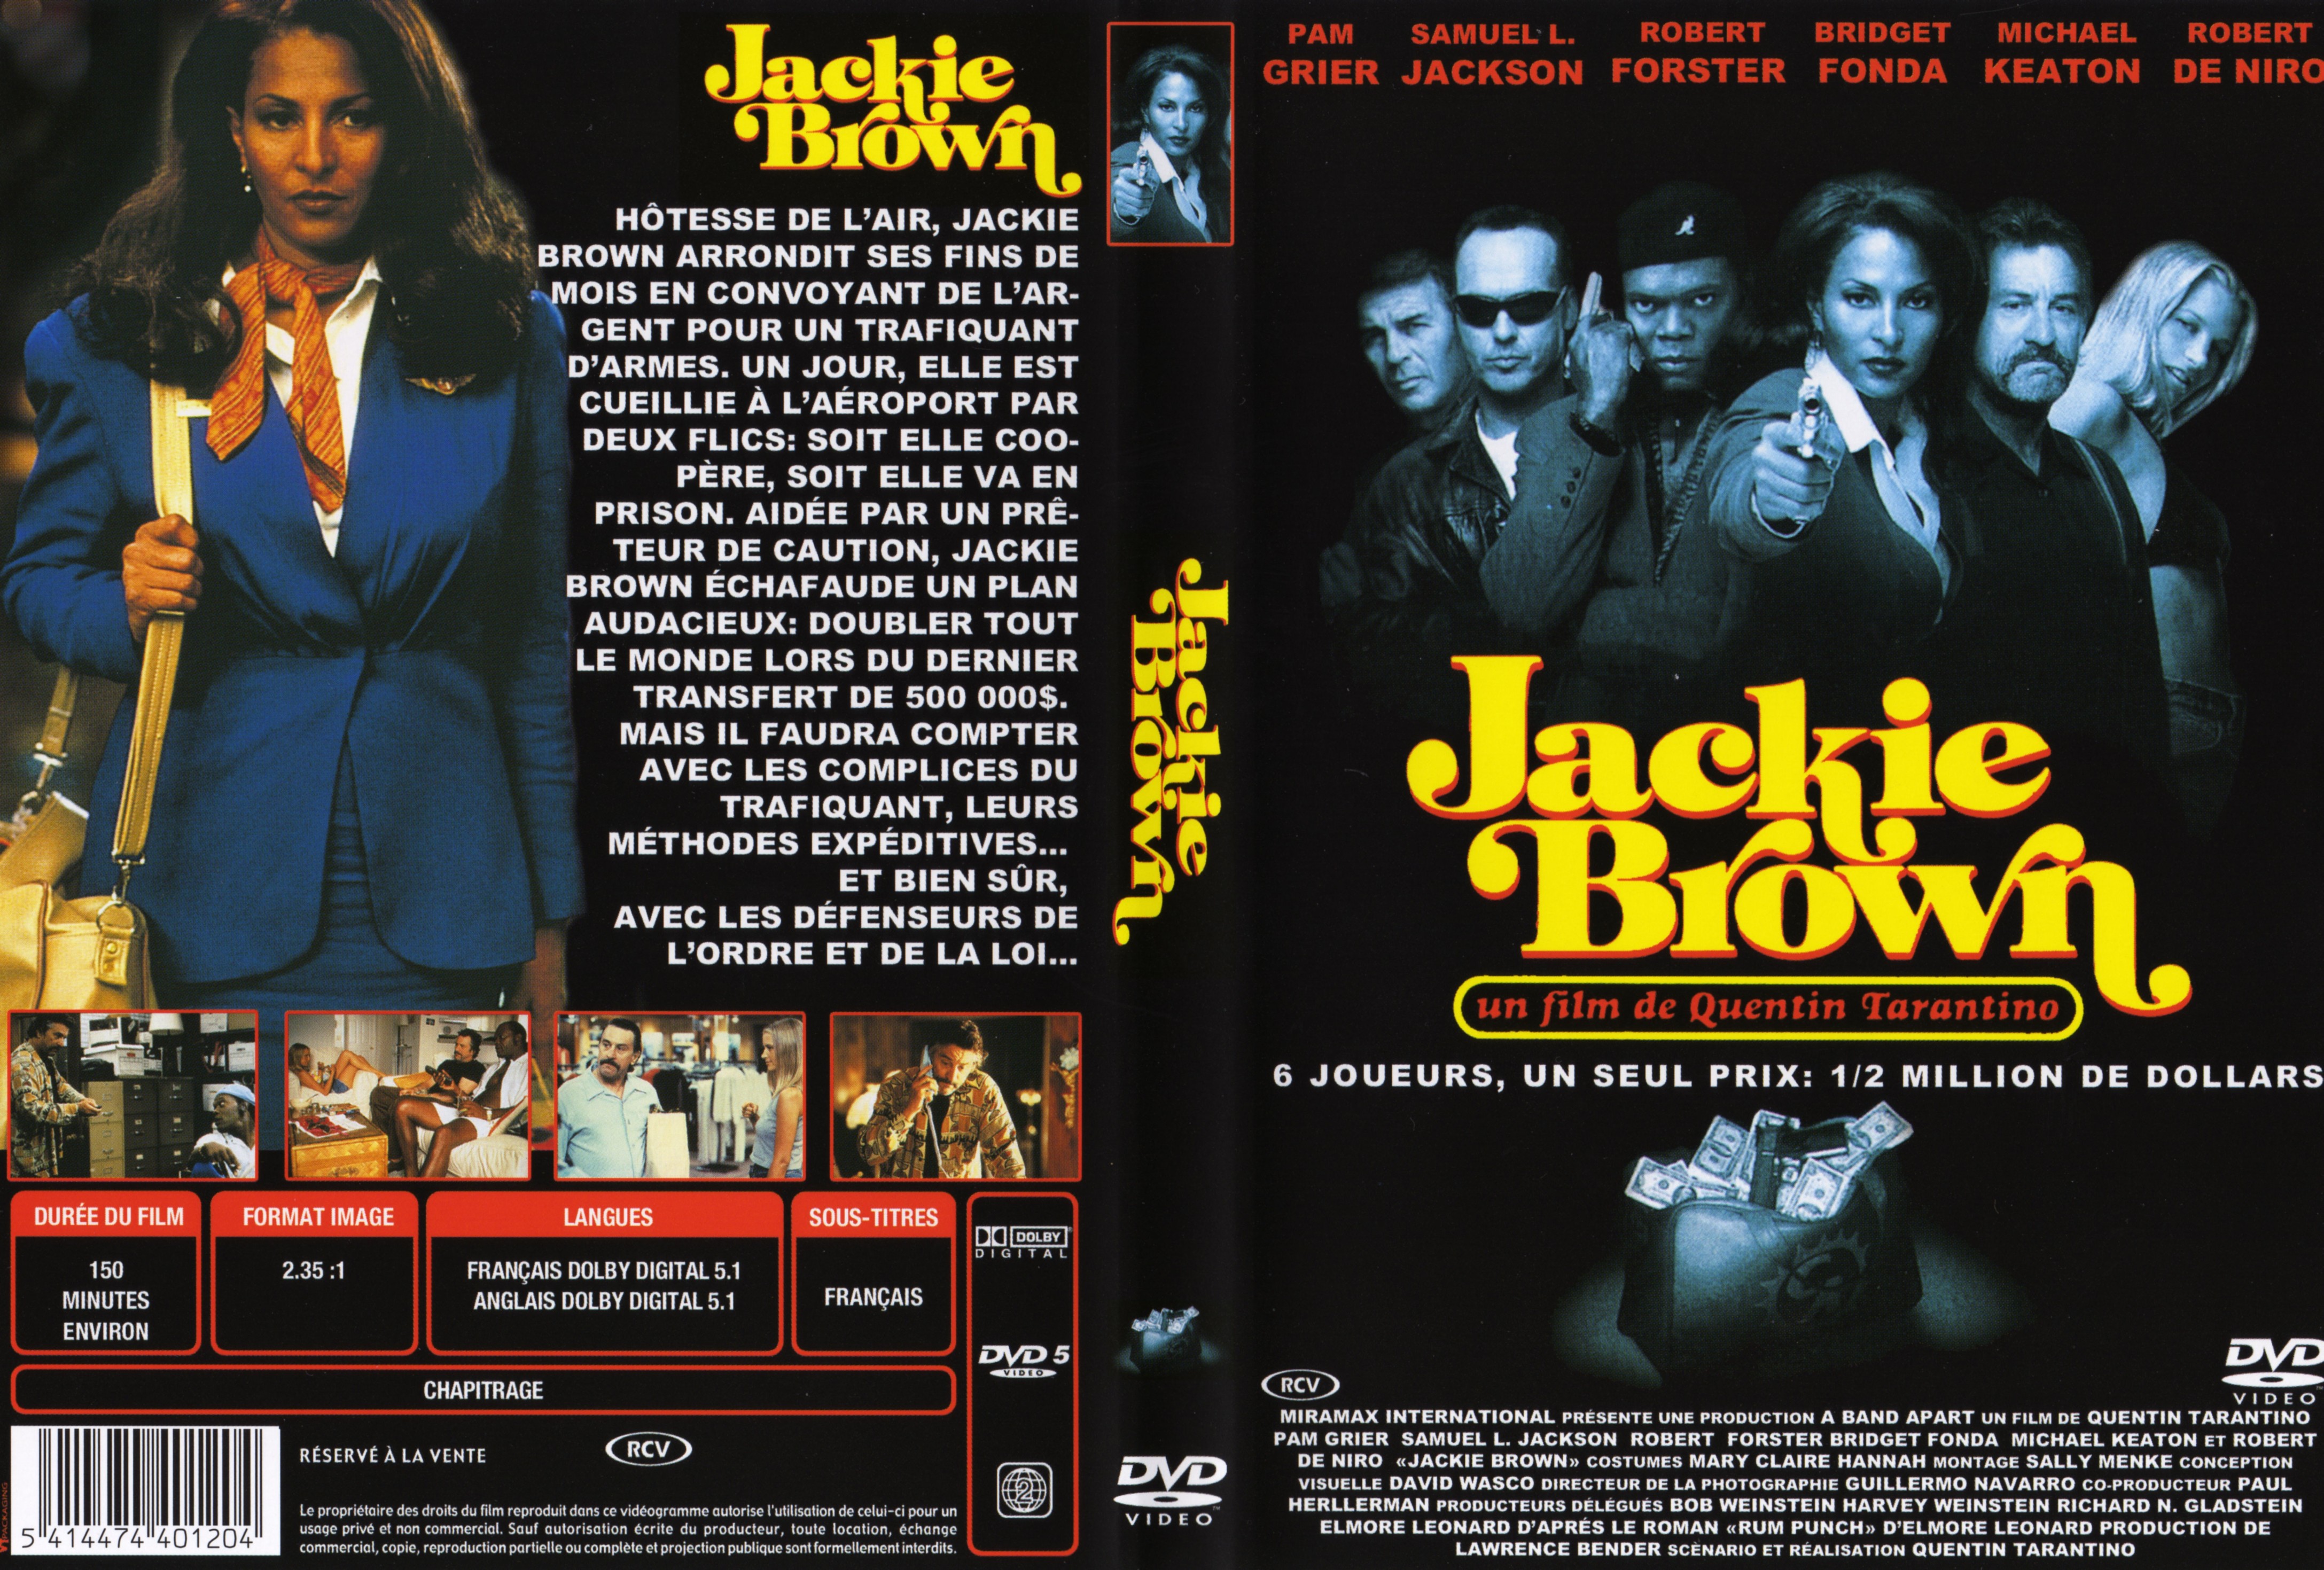 Jaquette DVD Jackie Brown v2